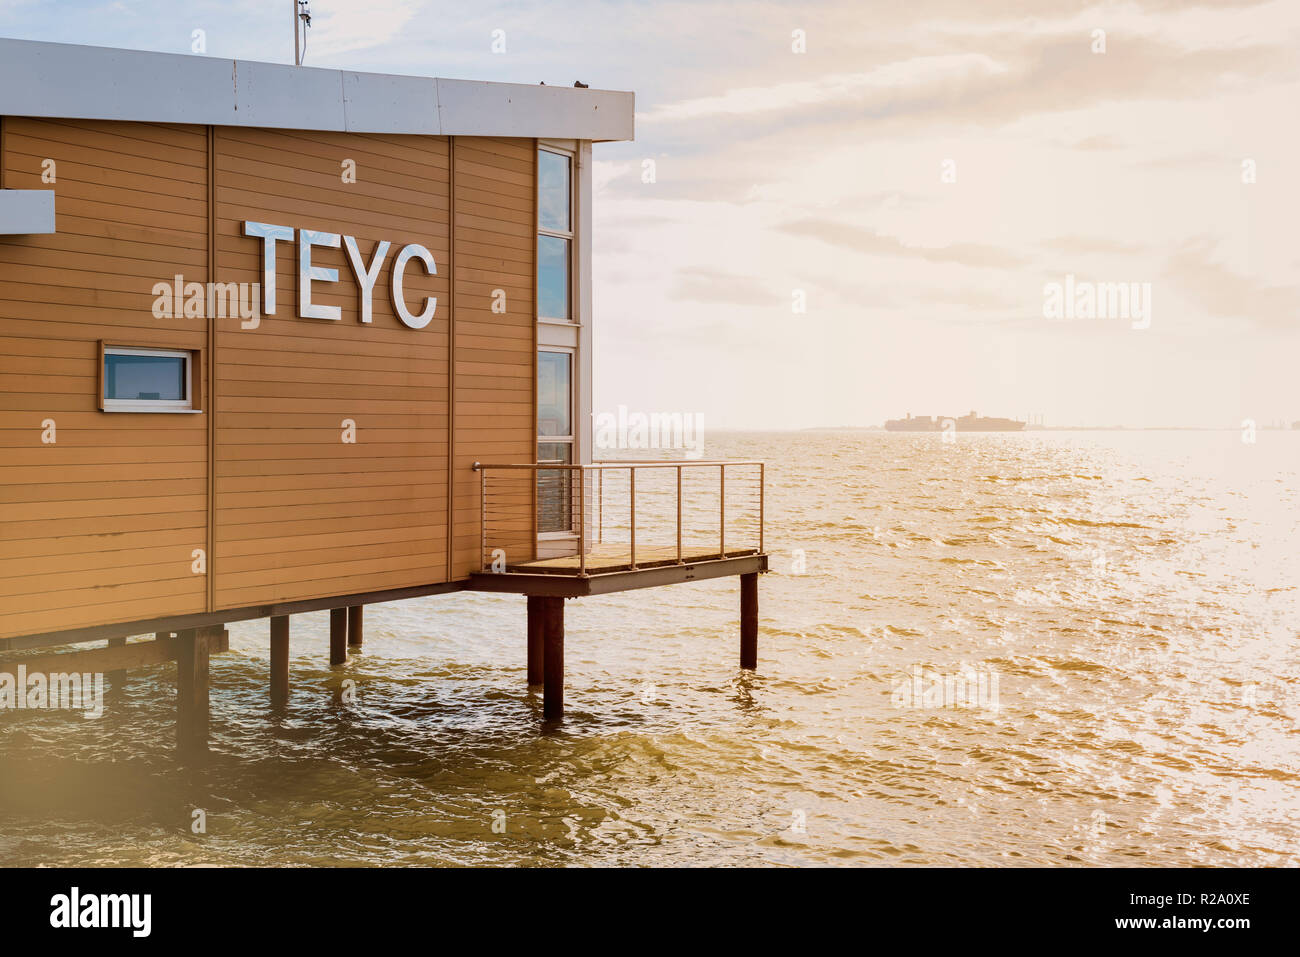 TEYC, Thames Estuary Yacht Club, Club bâtiment construit sur pilotis au bord de l'eau. Club house sur la mer, Banque D'Images